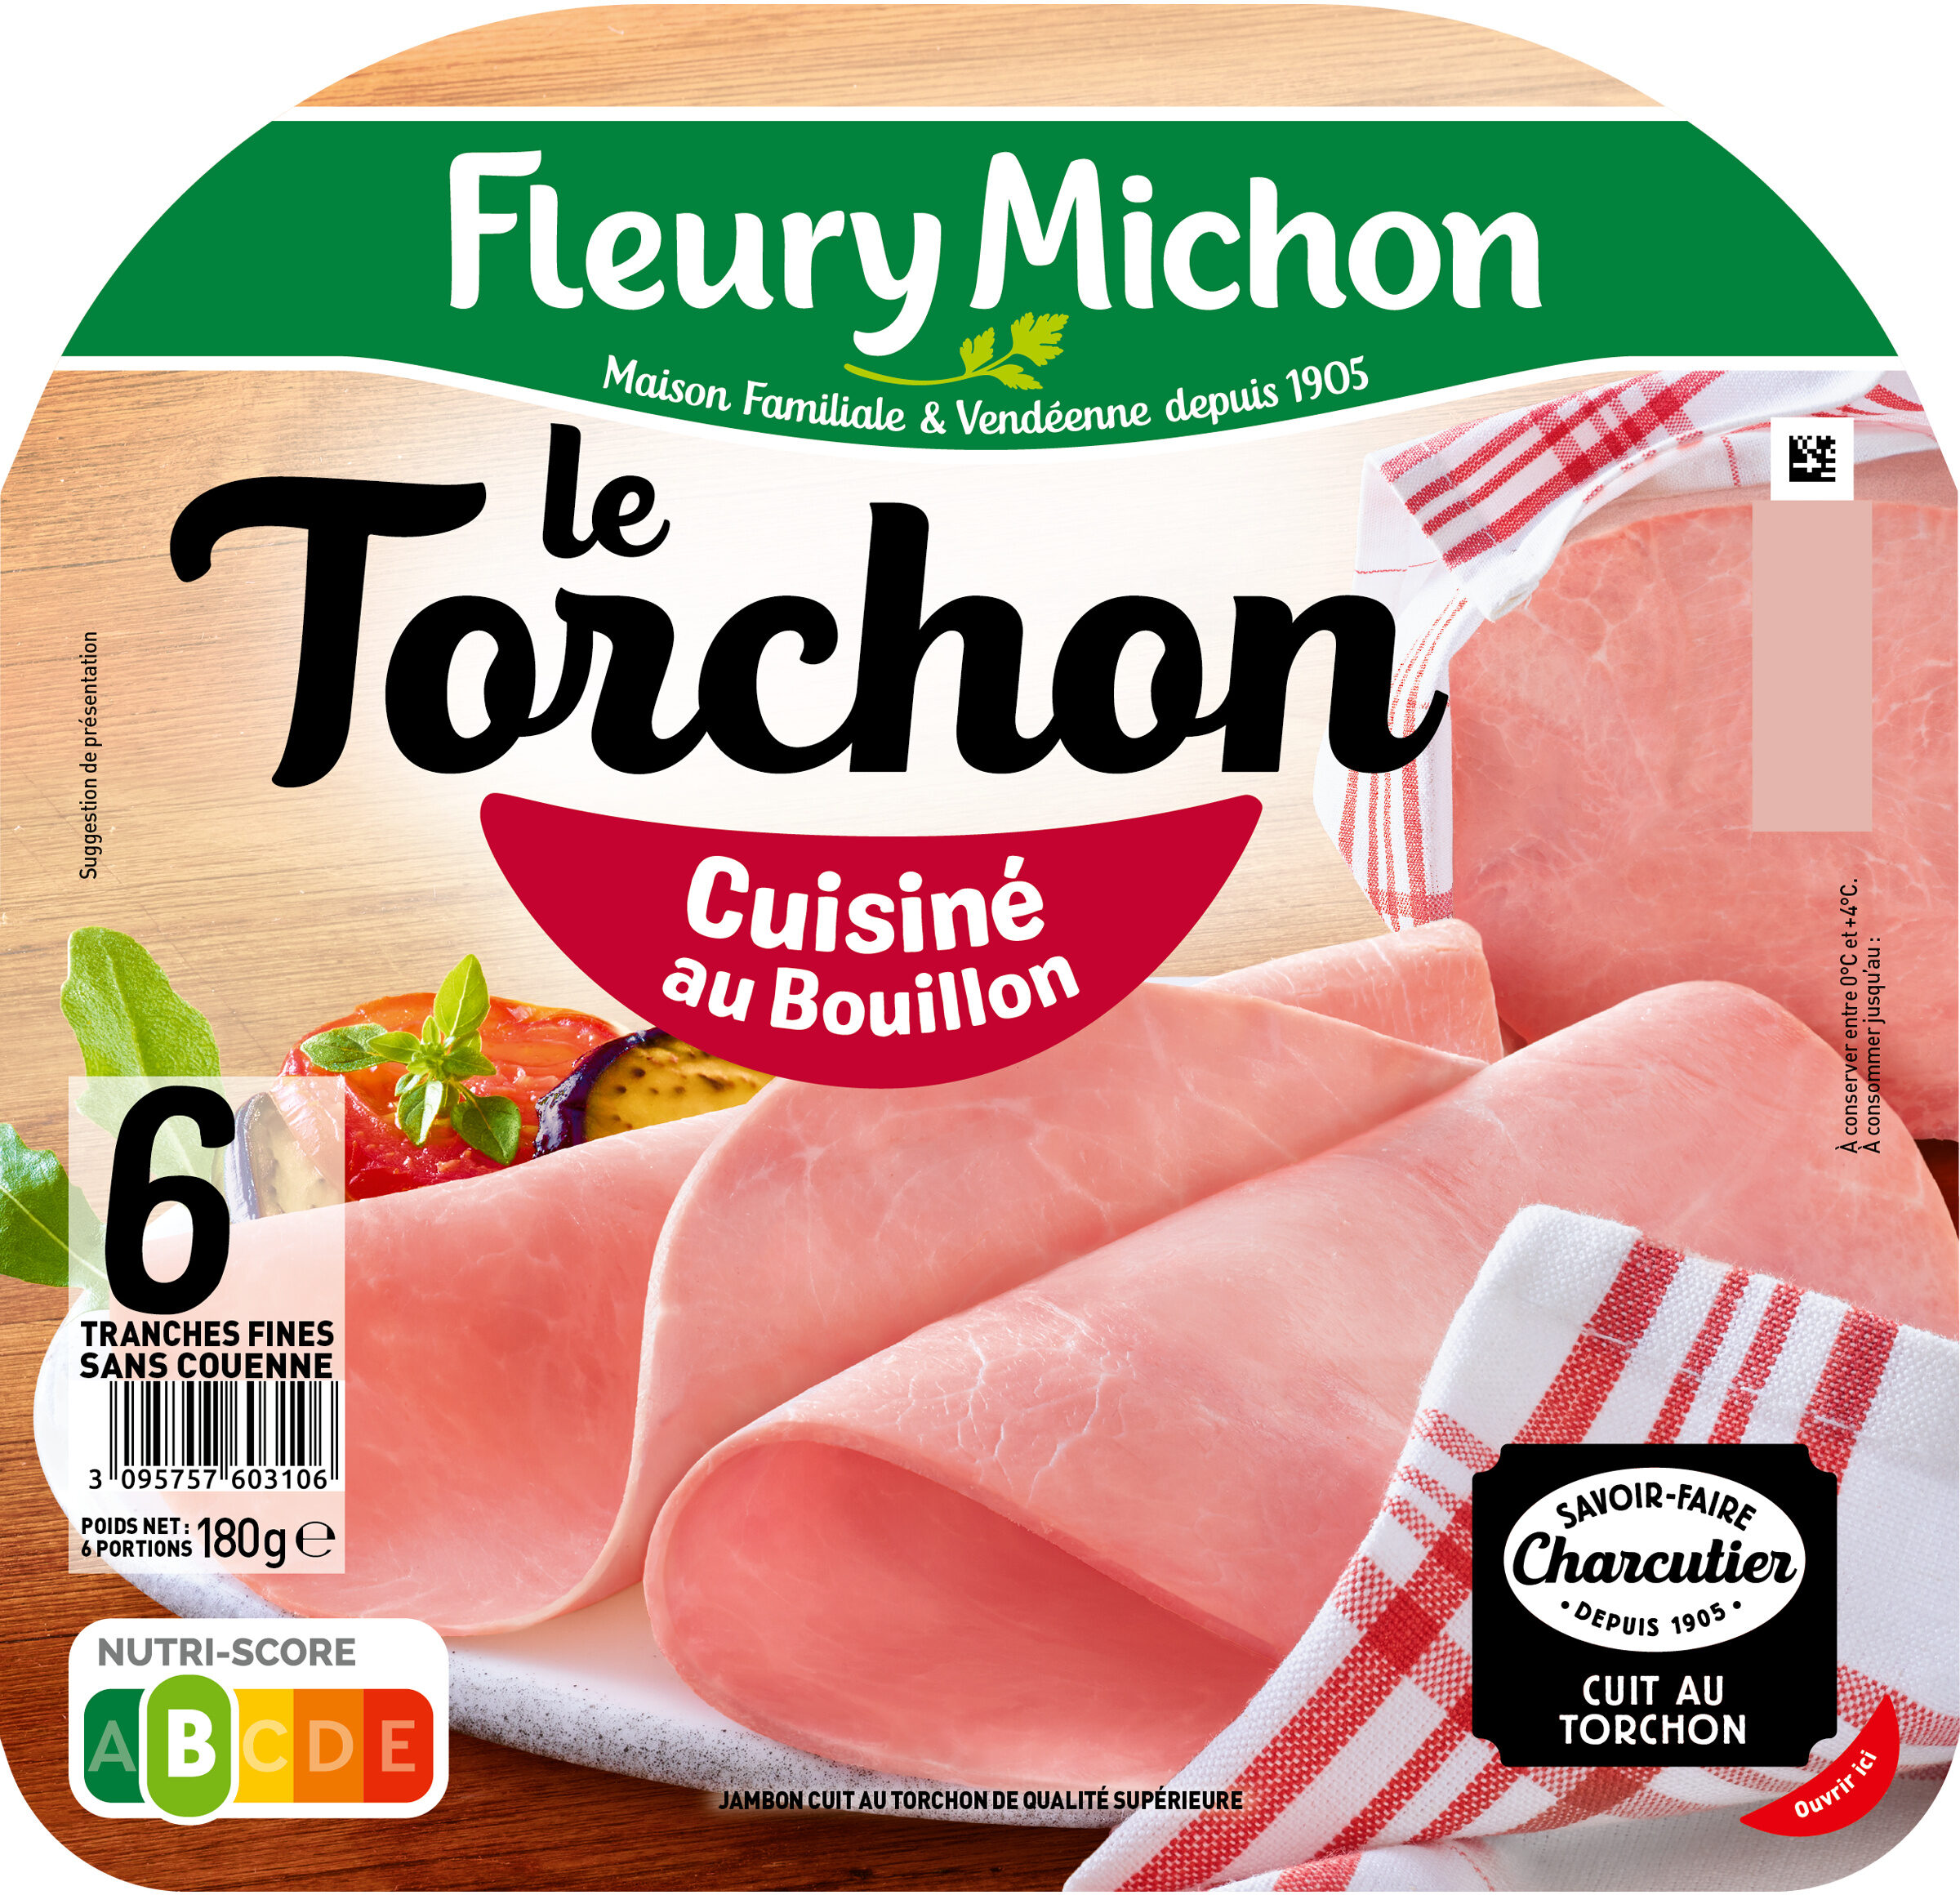 Le Torchon - Cuisiné au Bouillon - Producto - fr